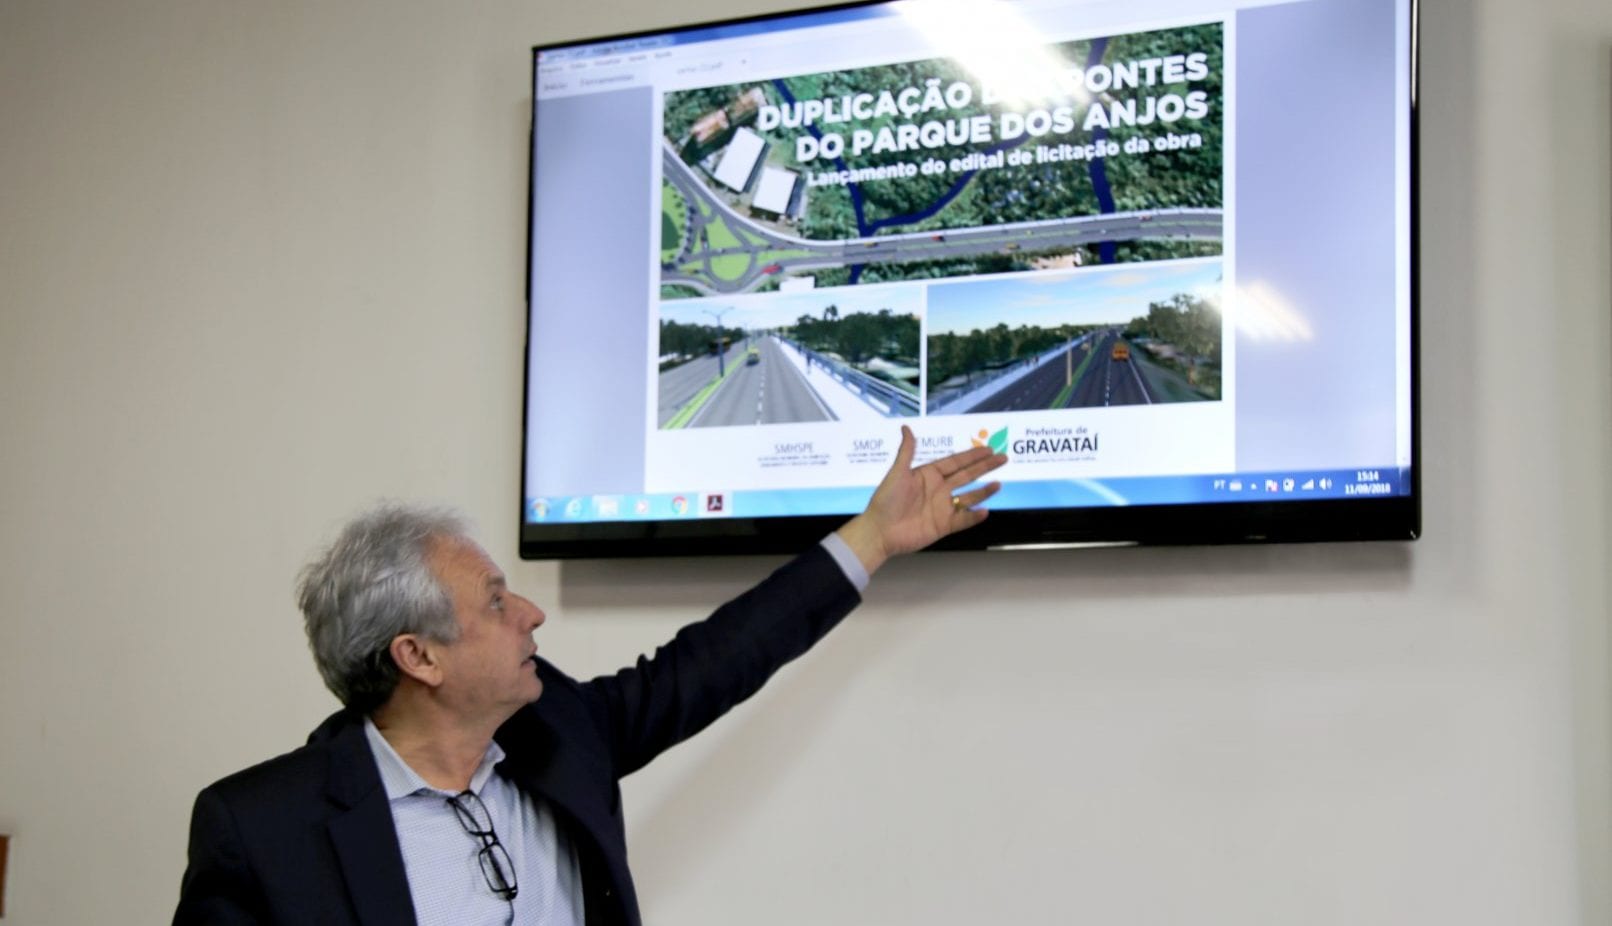 Mais de R$ 6 milhões | Duplicação das pontes do Parque dos Anjos iniciam em novembro